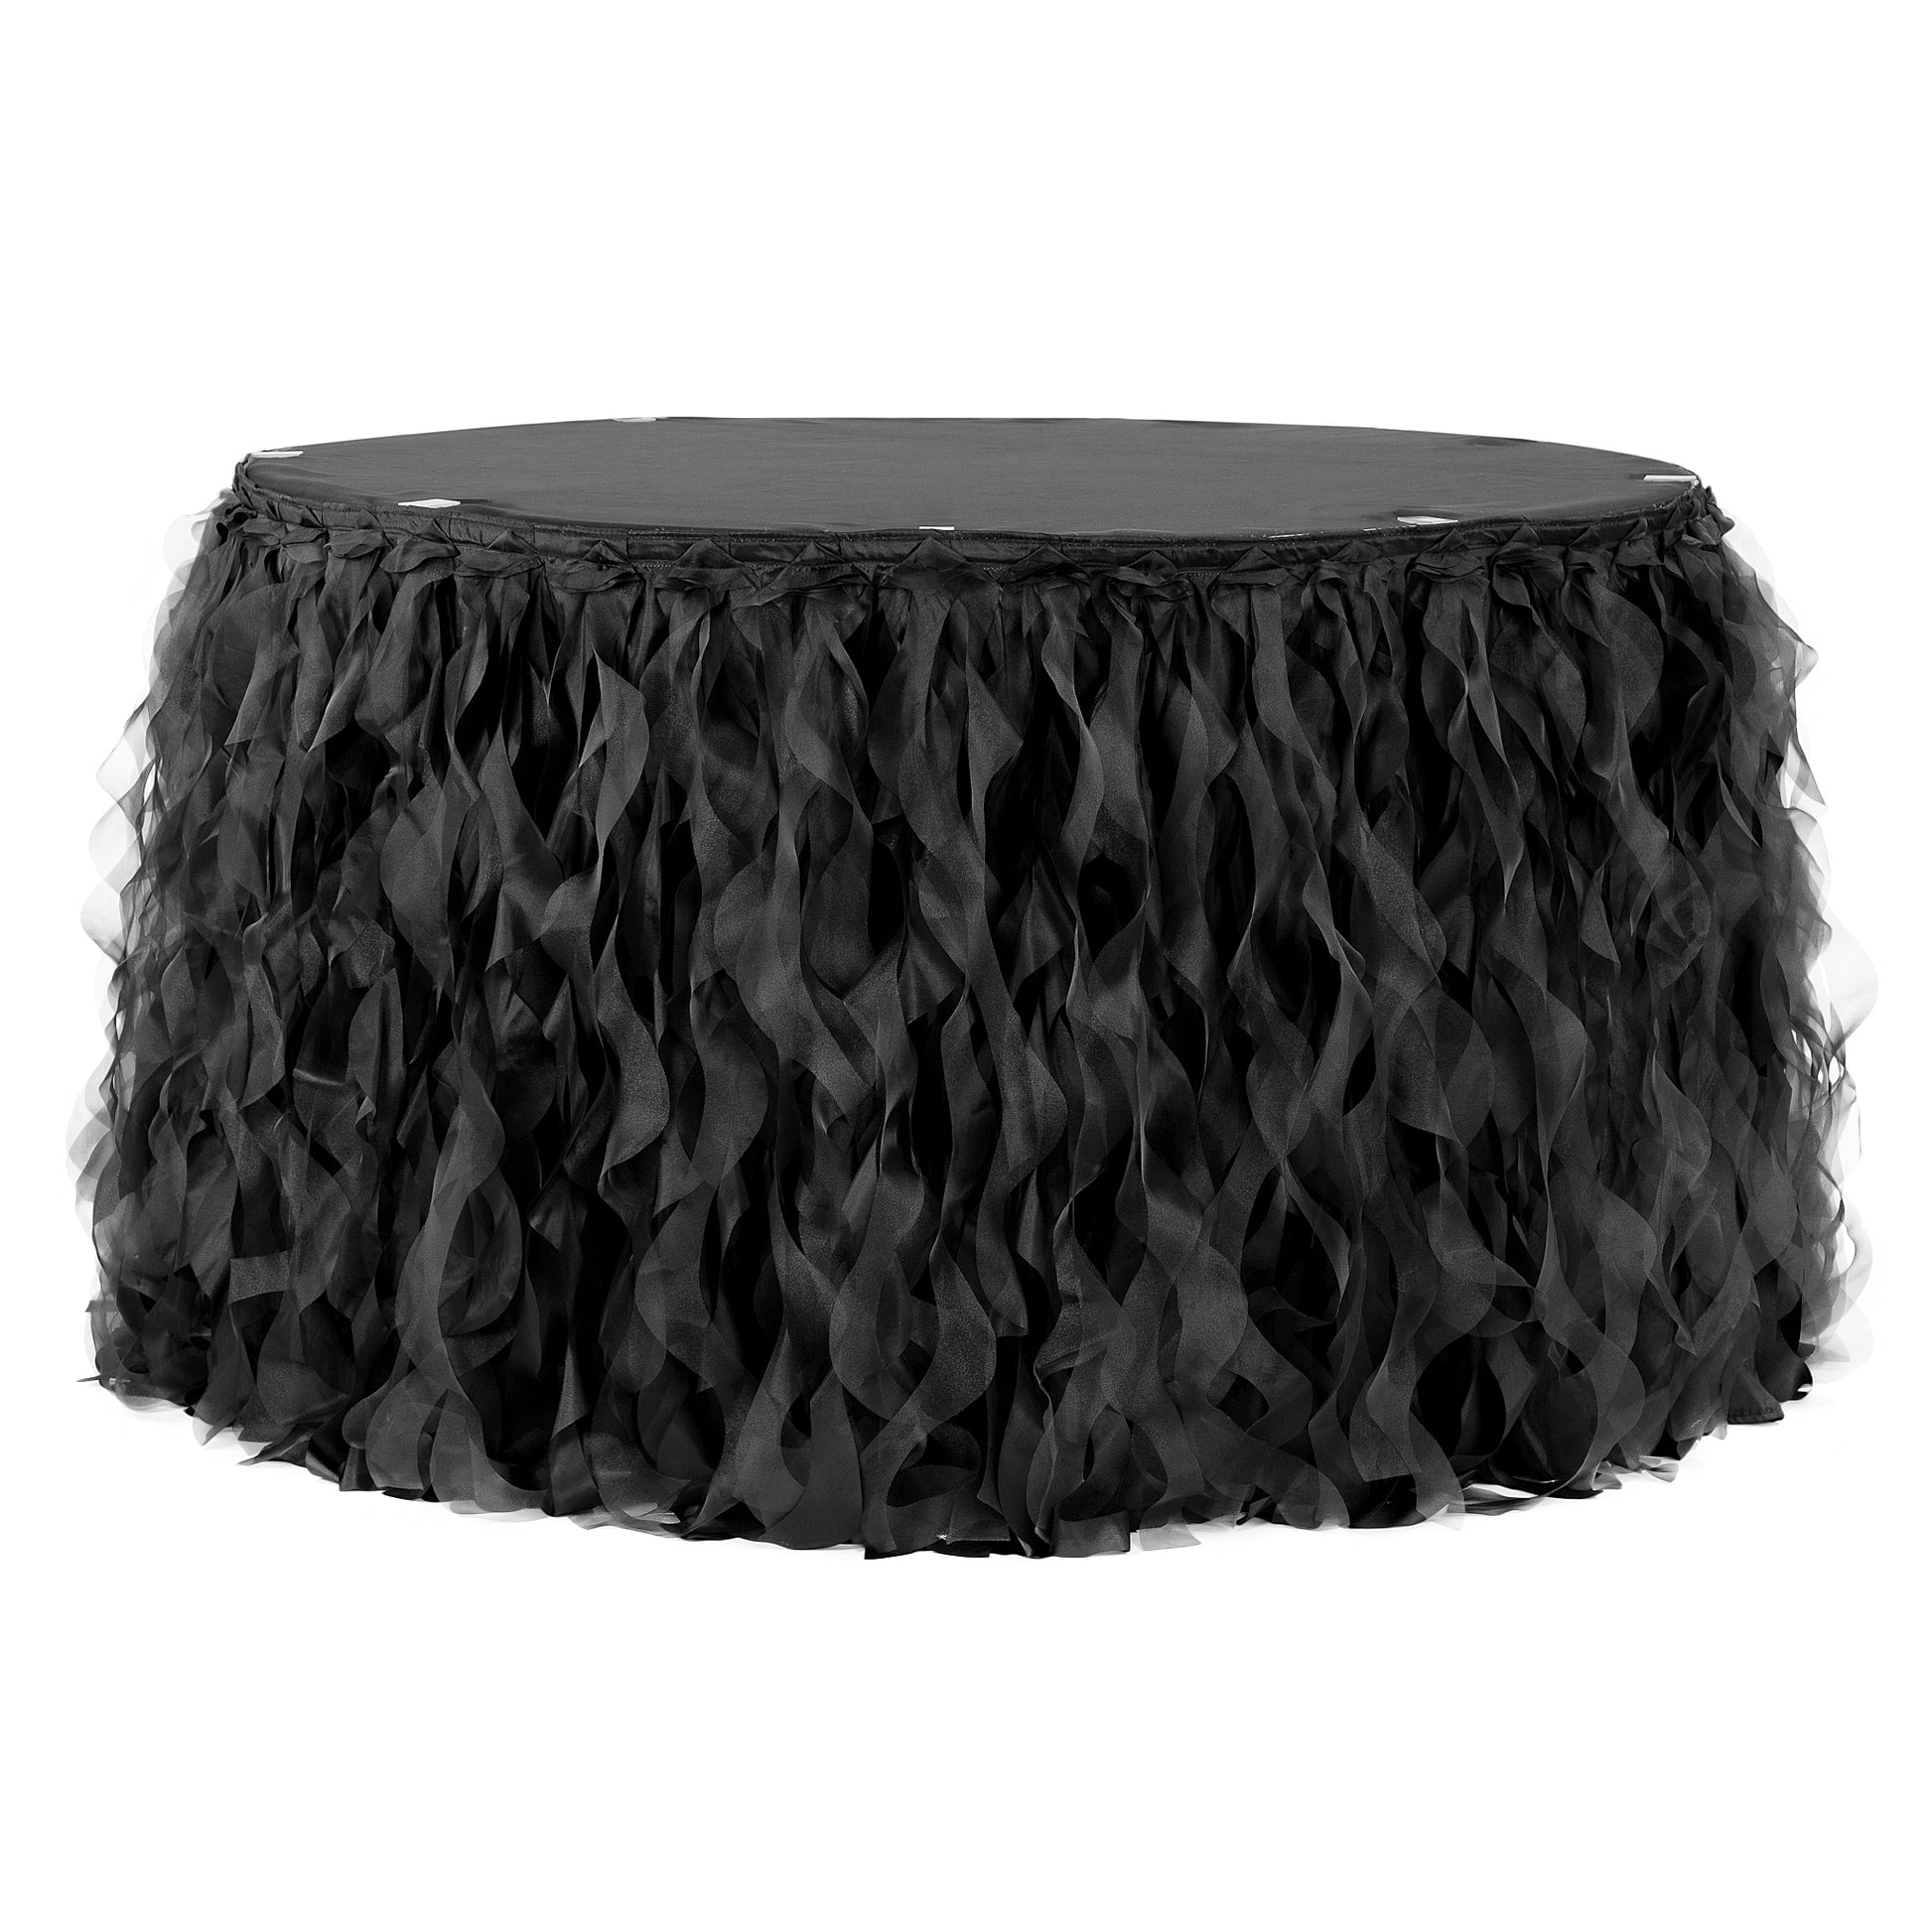 Curly Willow 14ft Table Skirt - Black - CV Linens